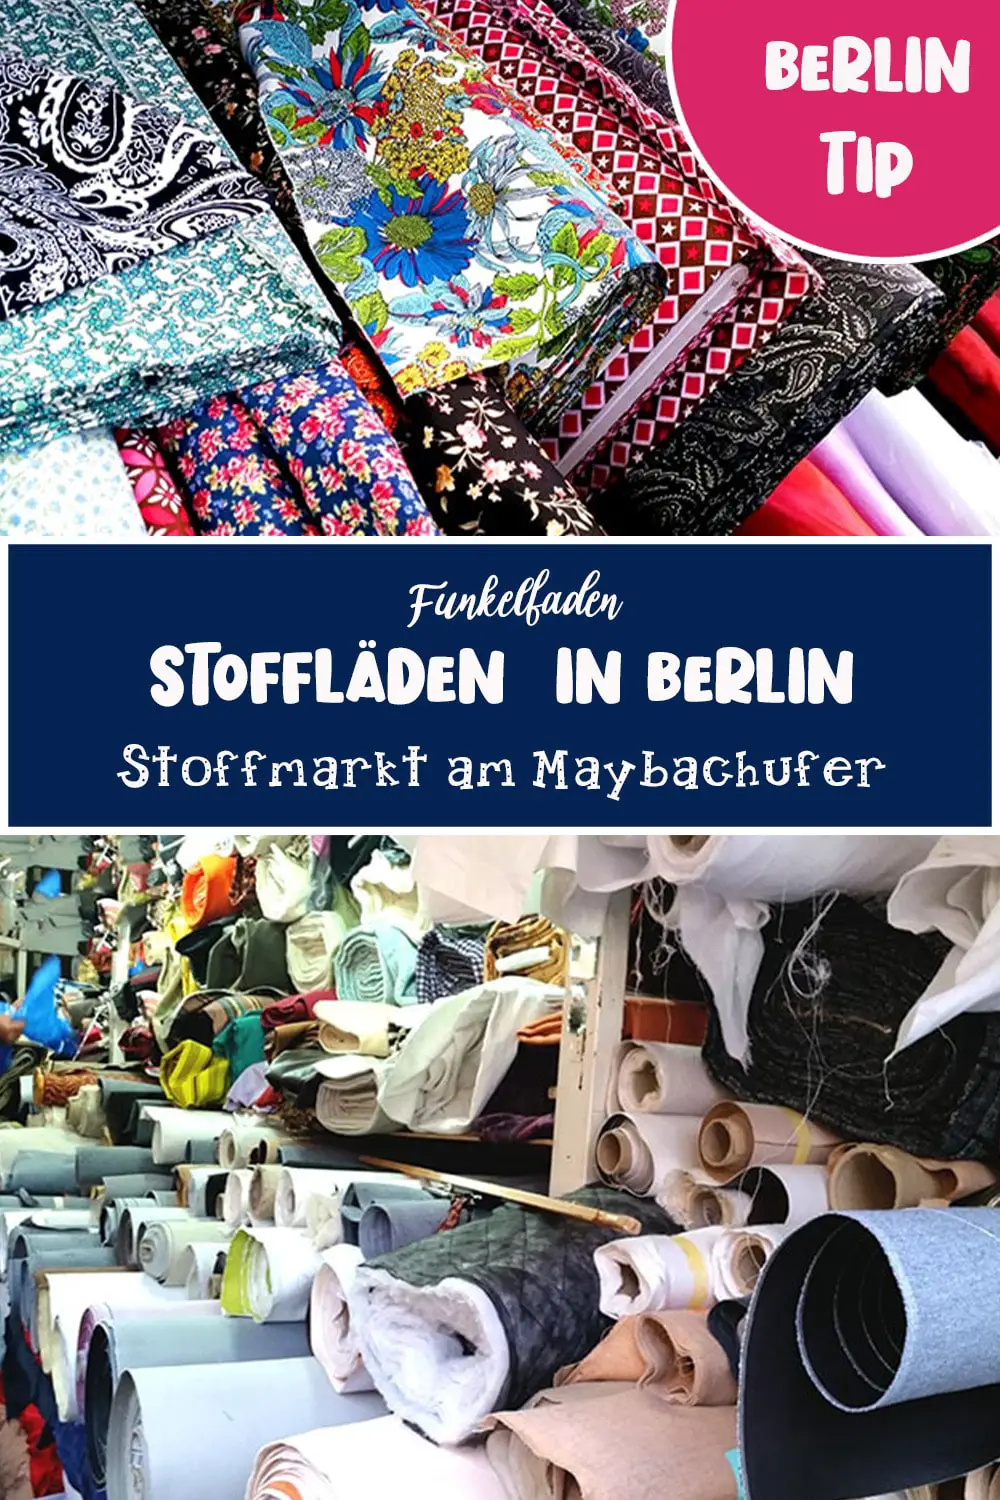 Stoffmarkt Berlin - Stoffmarkt am Maybachufer Stoffe kaufen in Berlin